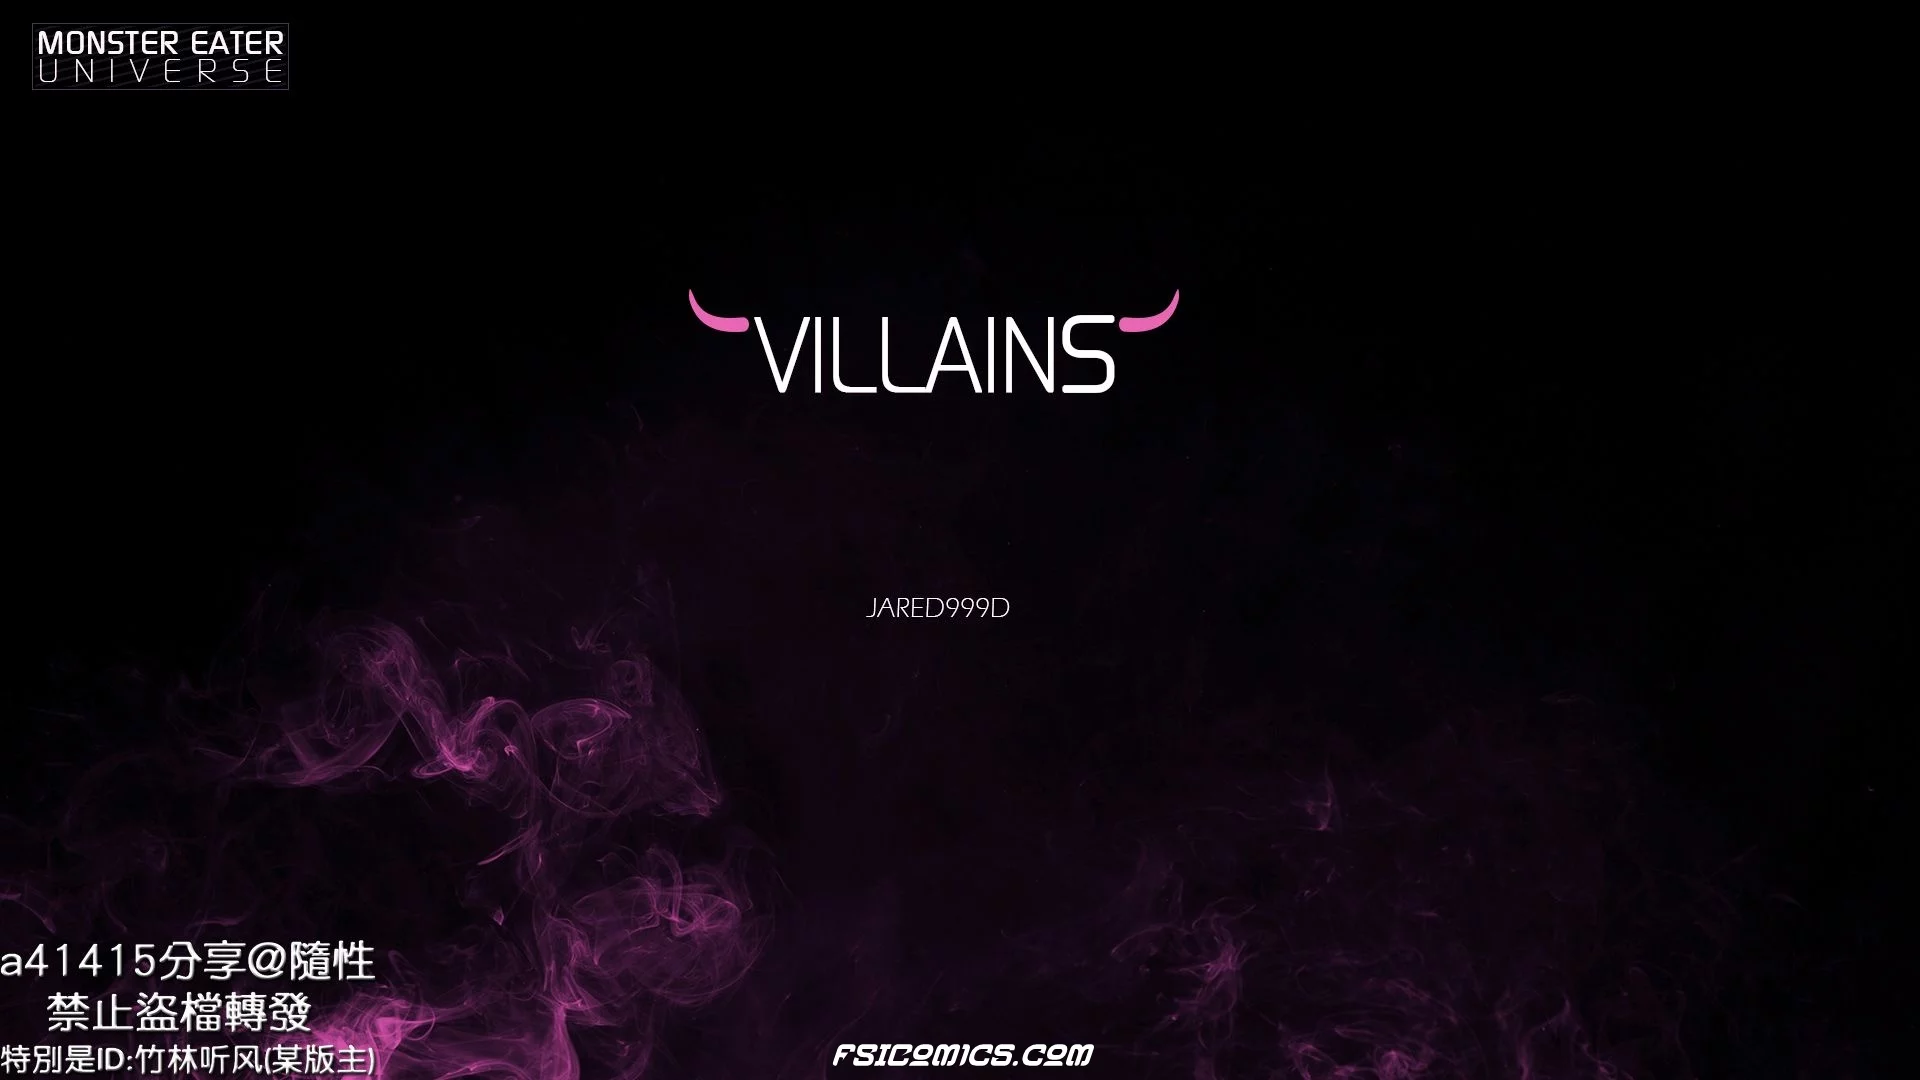 Villains Chapter 1 -Jared999D - 111 - FSIComics